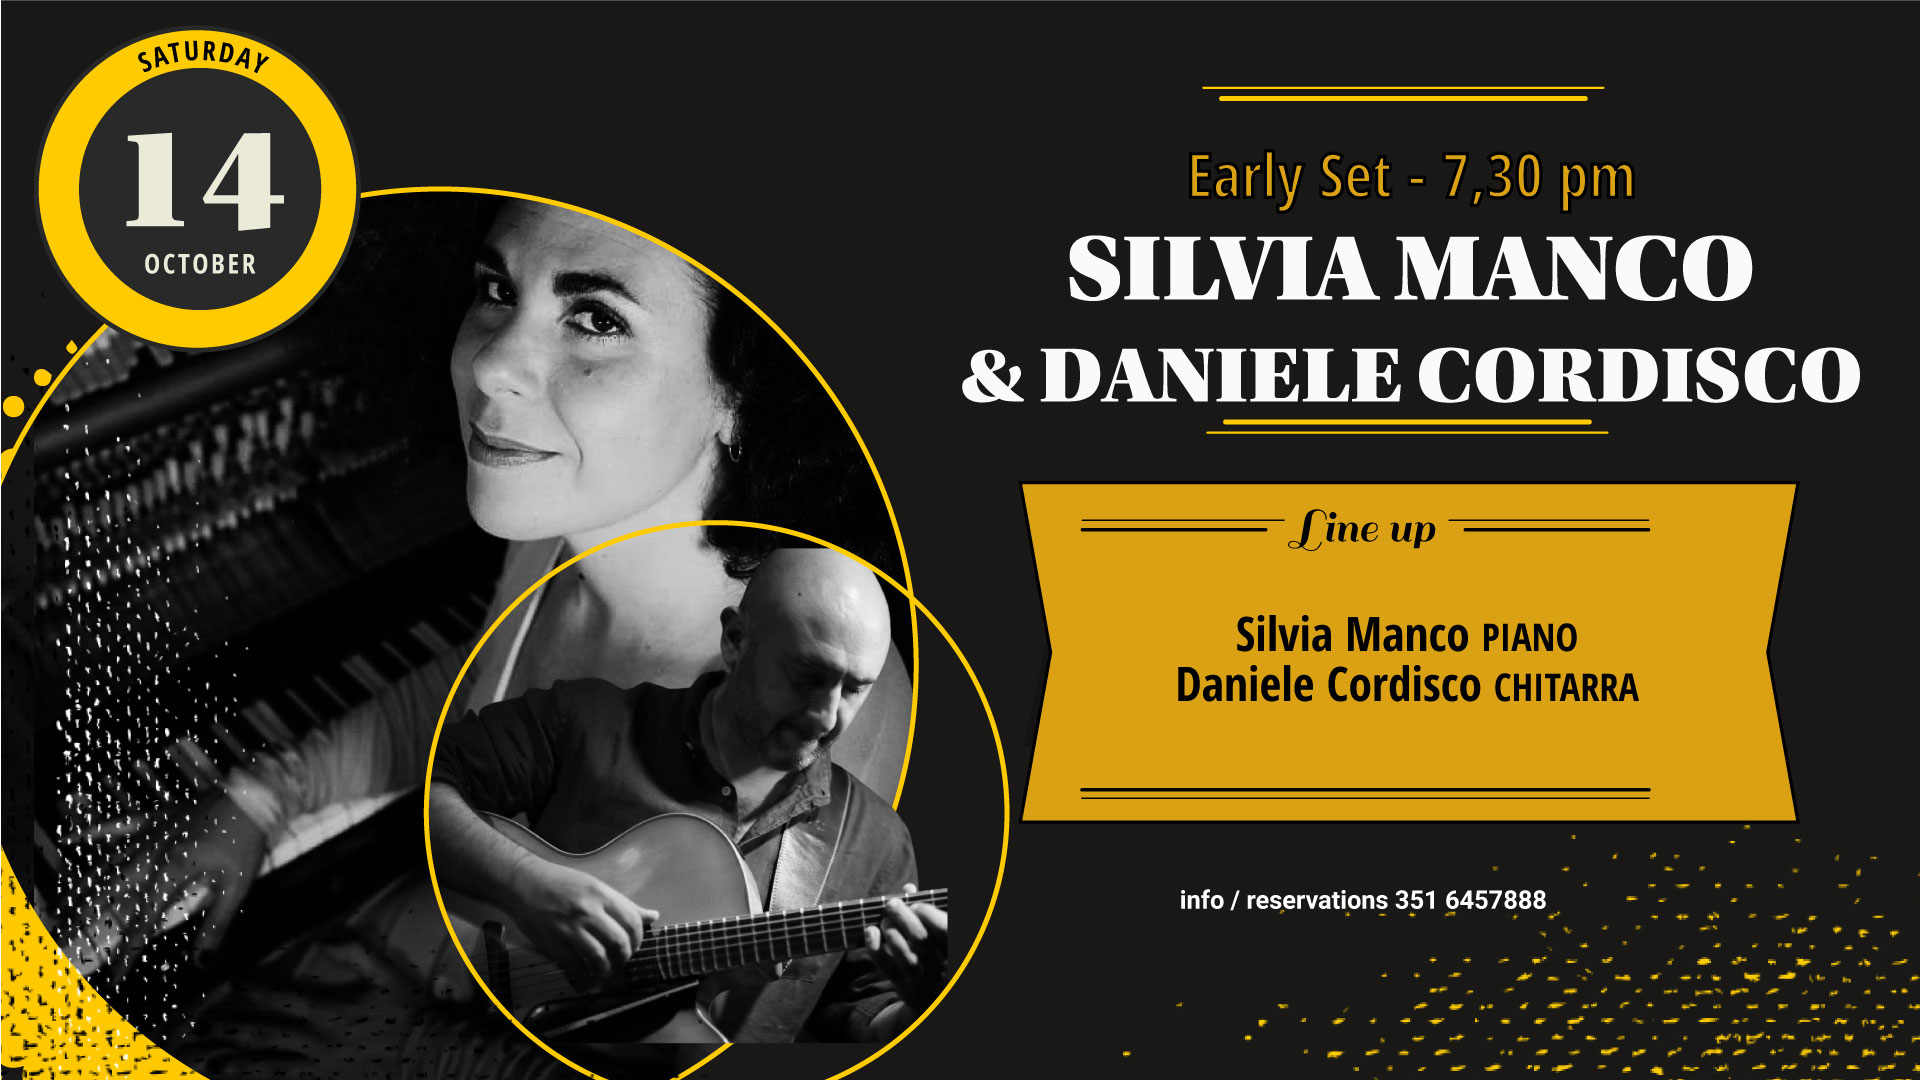 Early Set – Silvia Manco & Daniele Cordisco